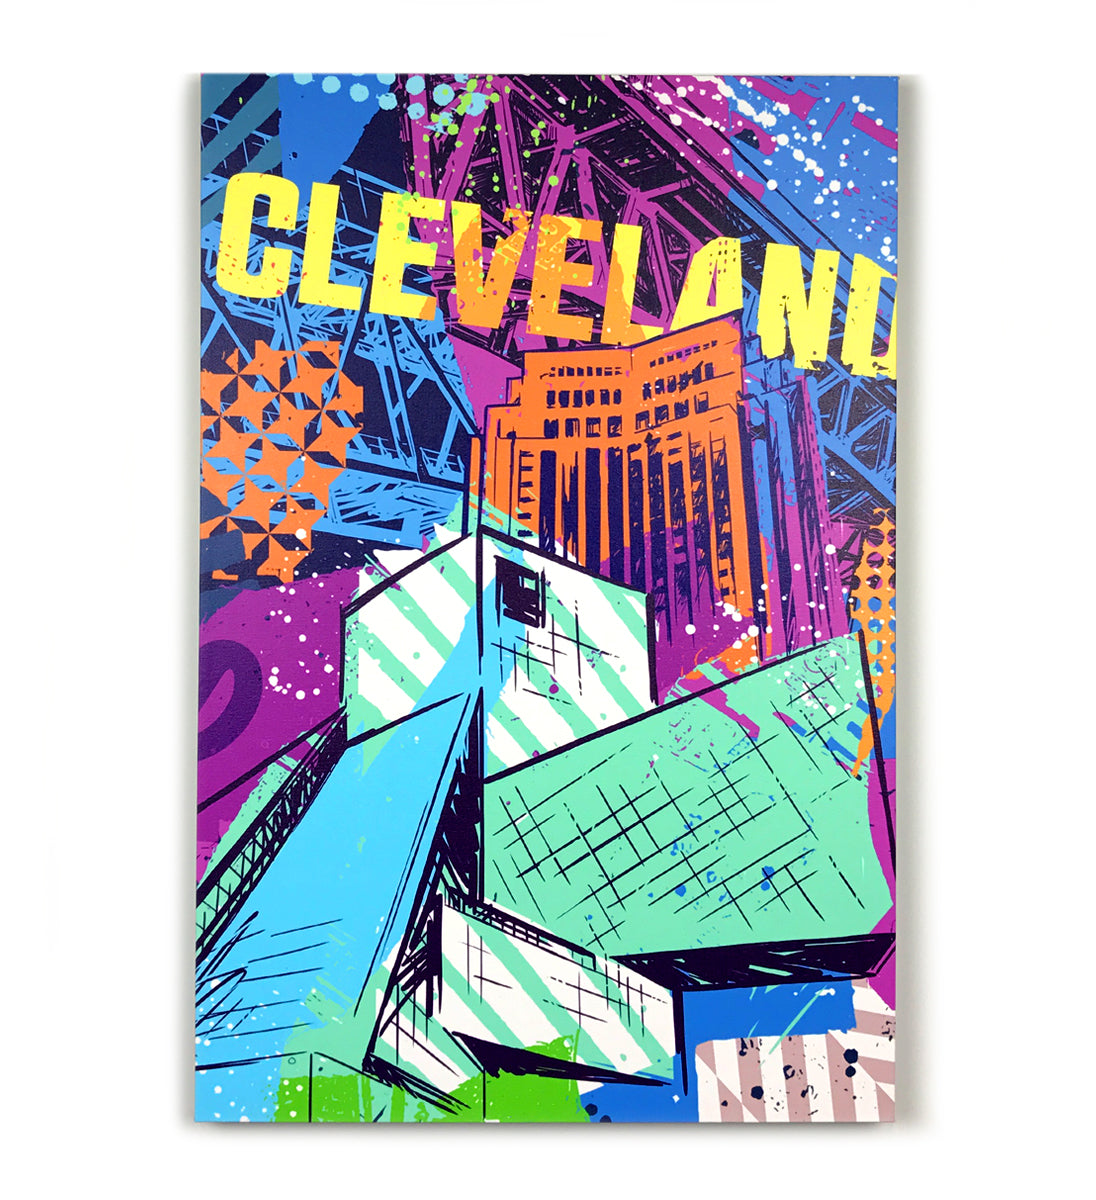 Cleveland C Guardian Canvas Artwork